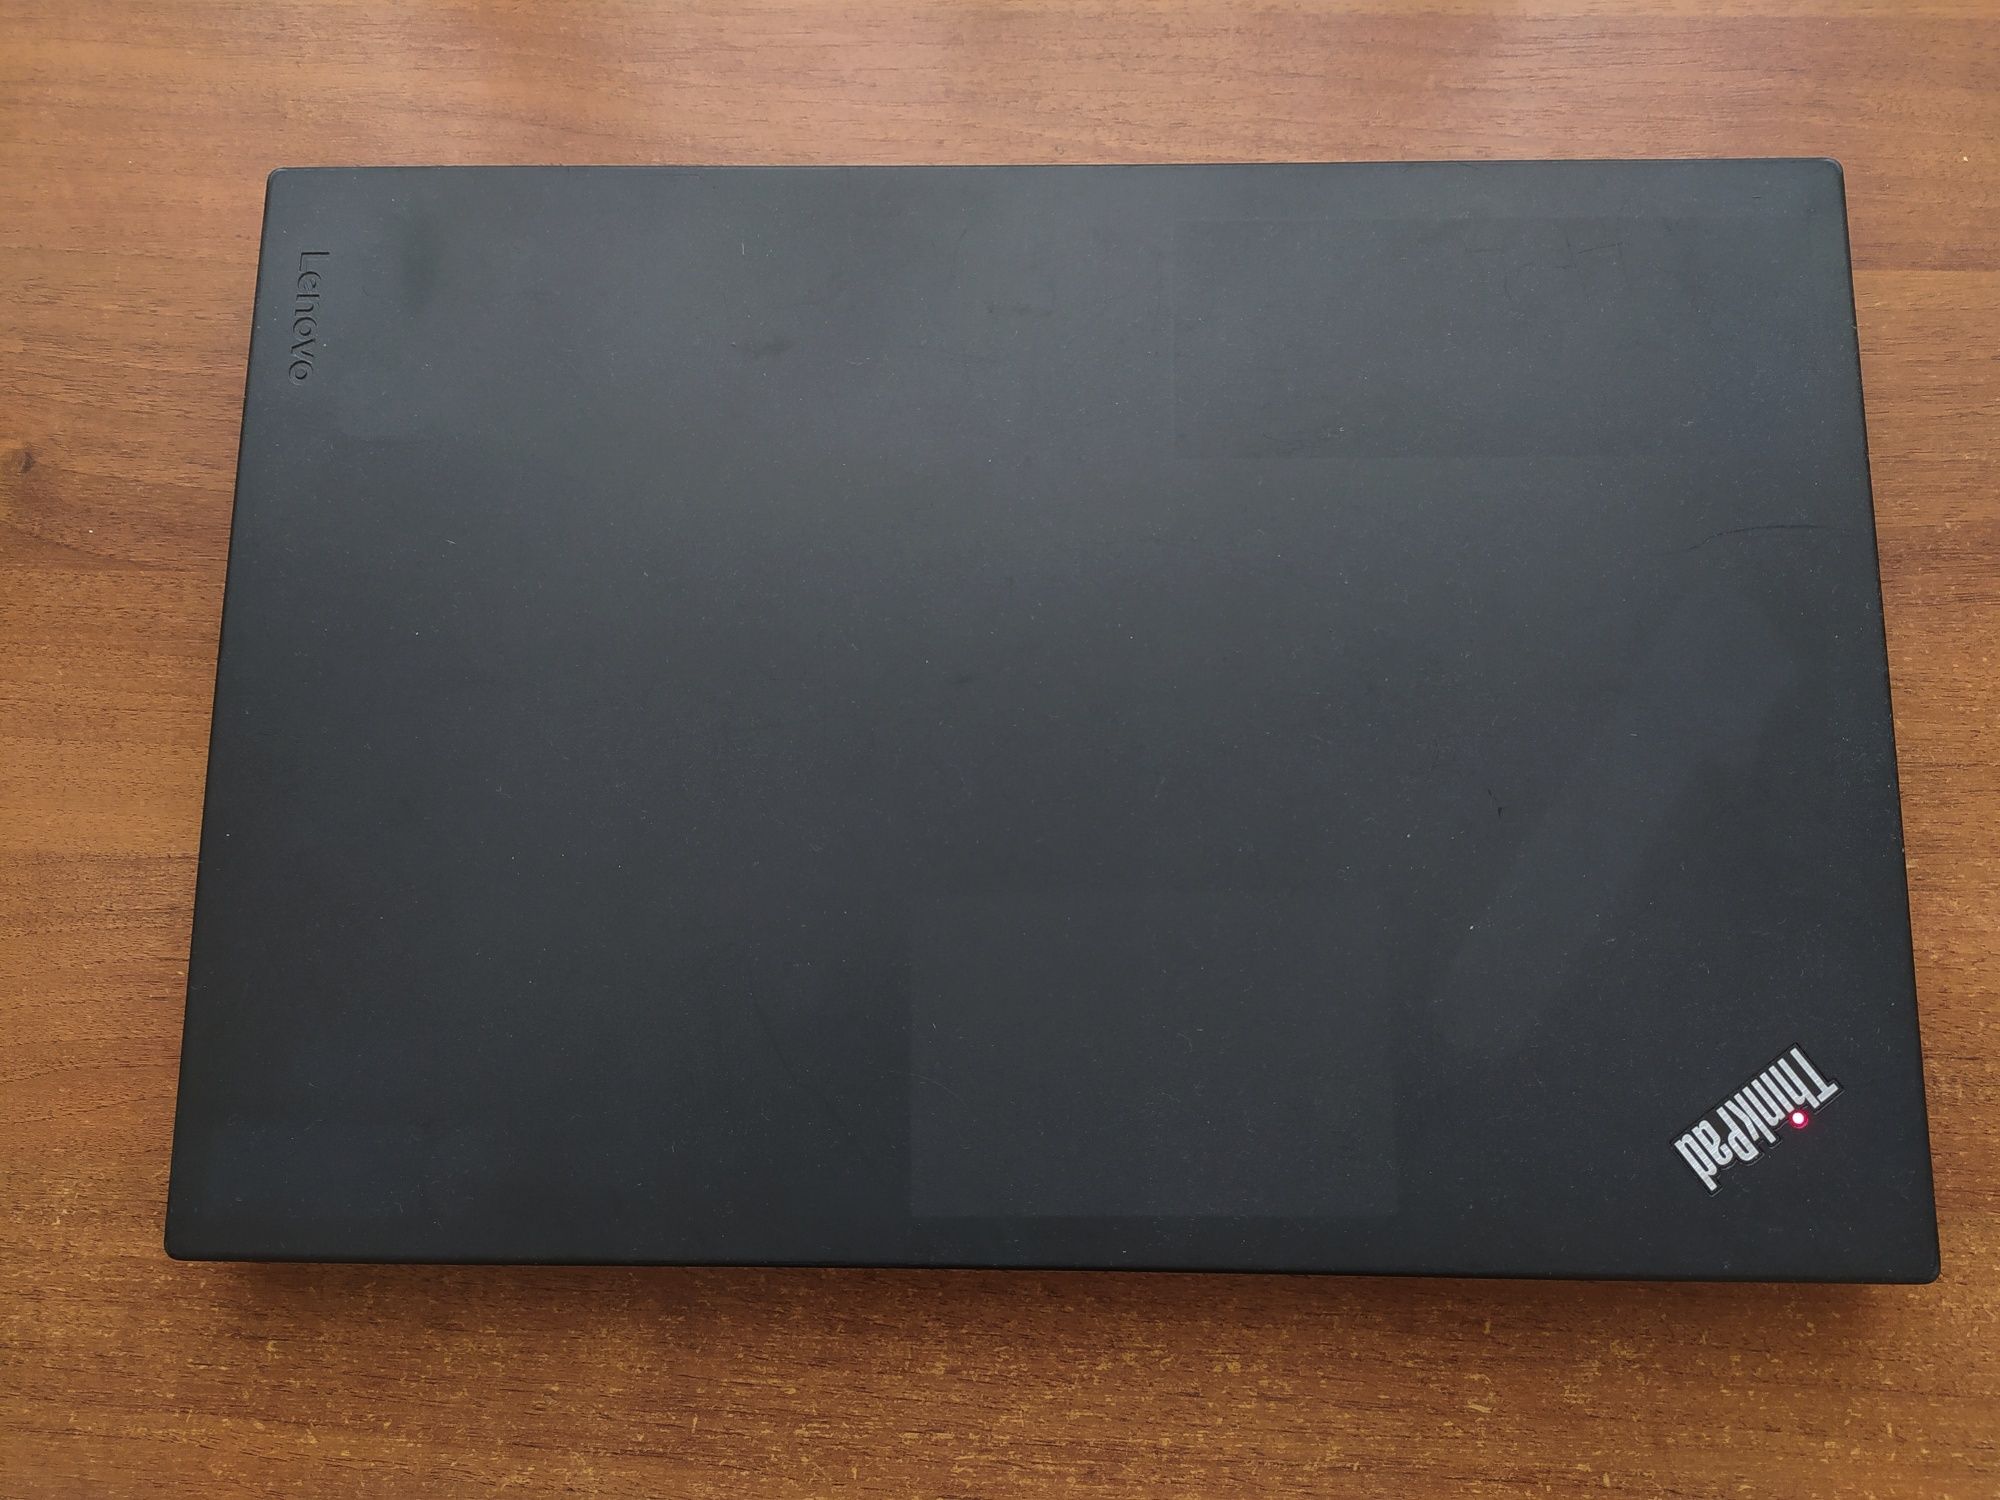 Lenovo ThinkPad T560